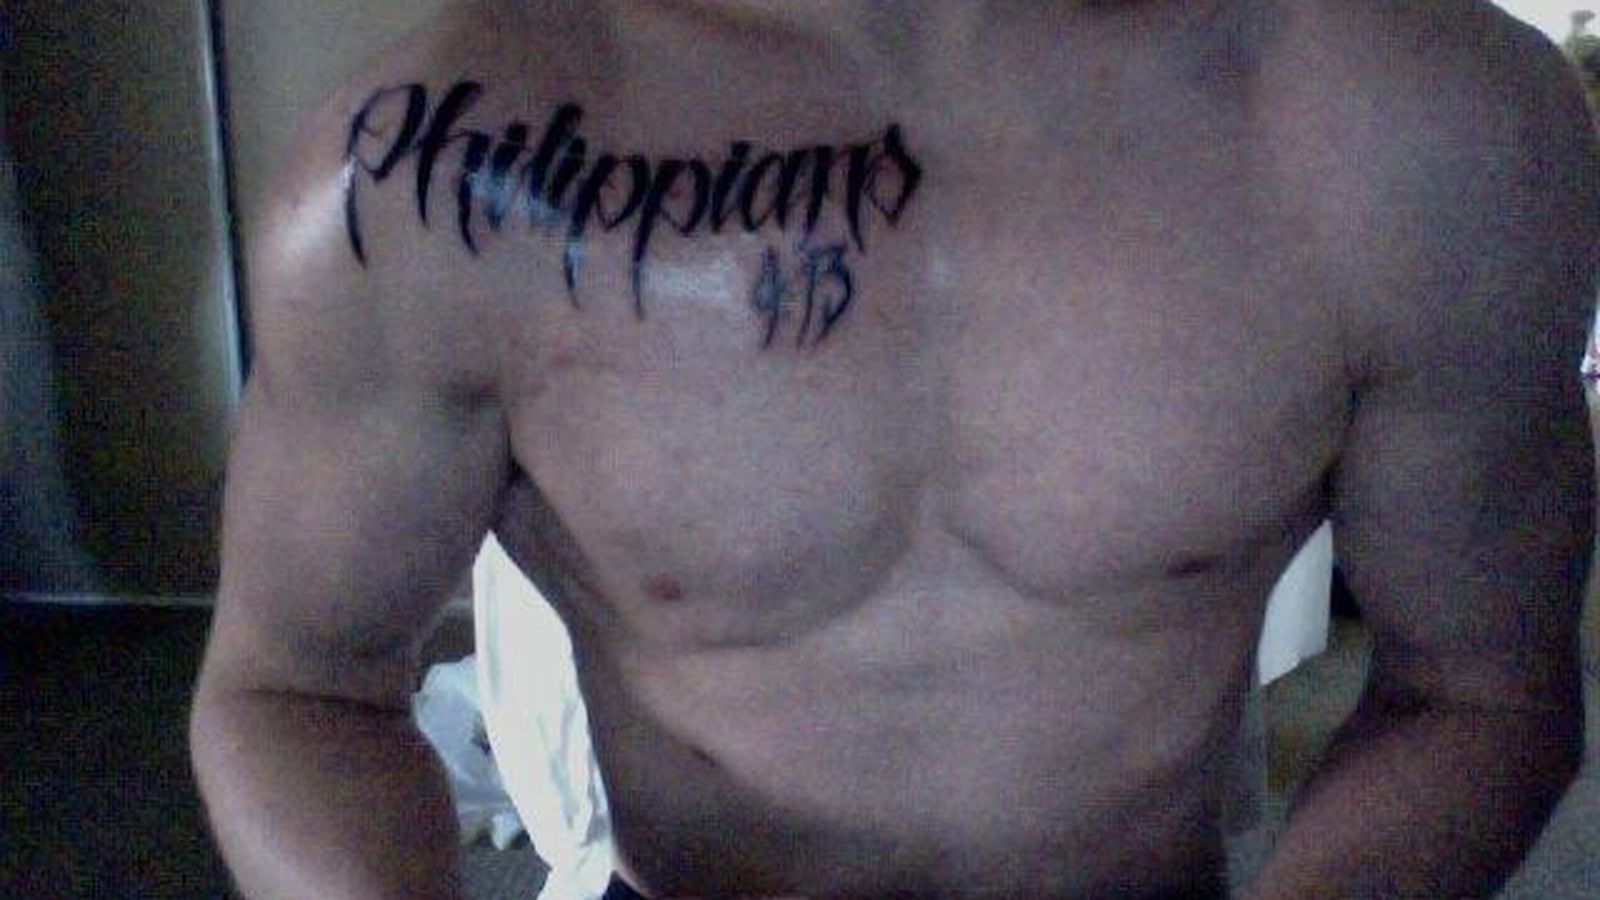 Jon Jones tattoo tribute from diehard fan (Pic) - MMAmania.com
